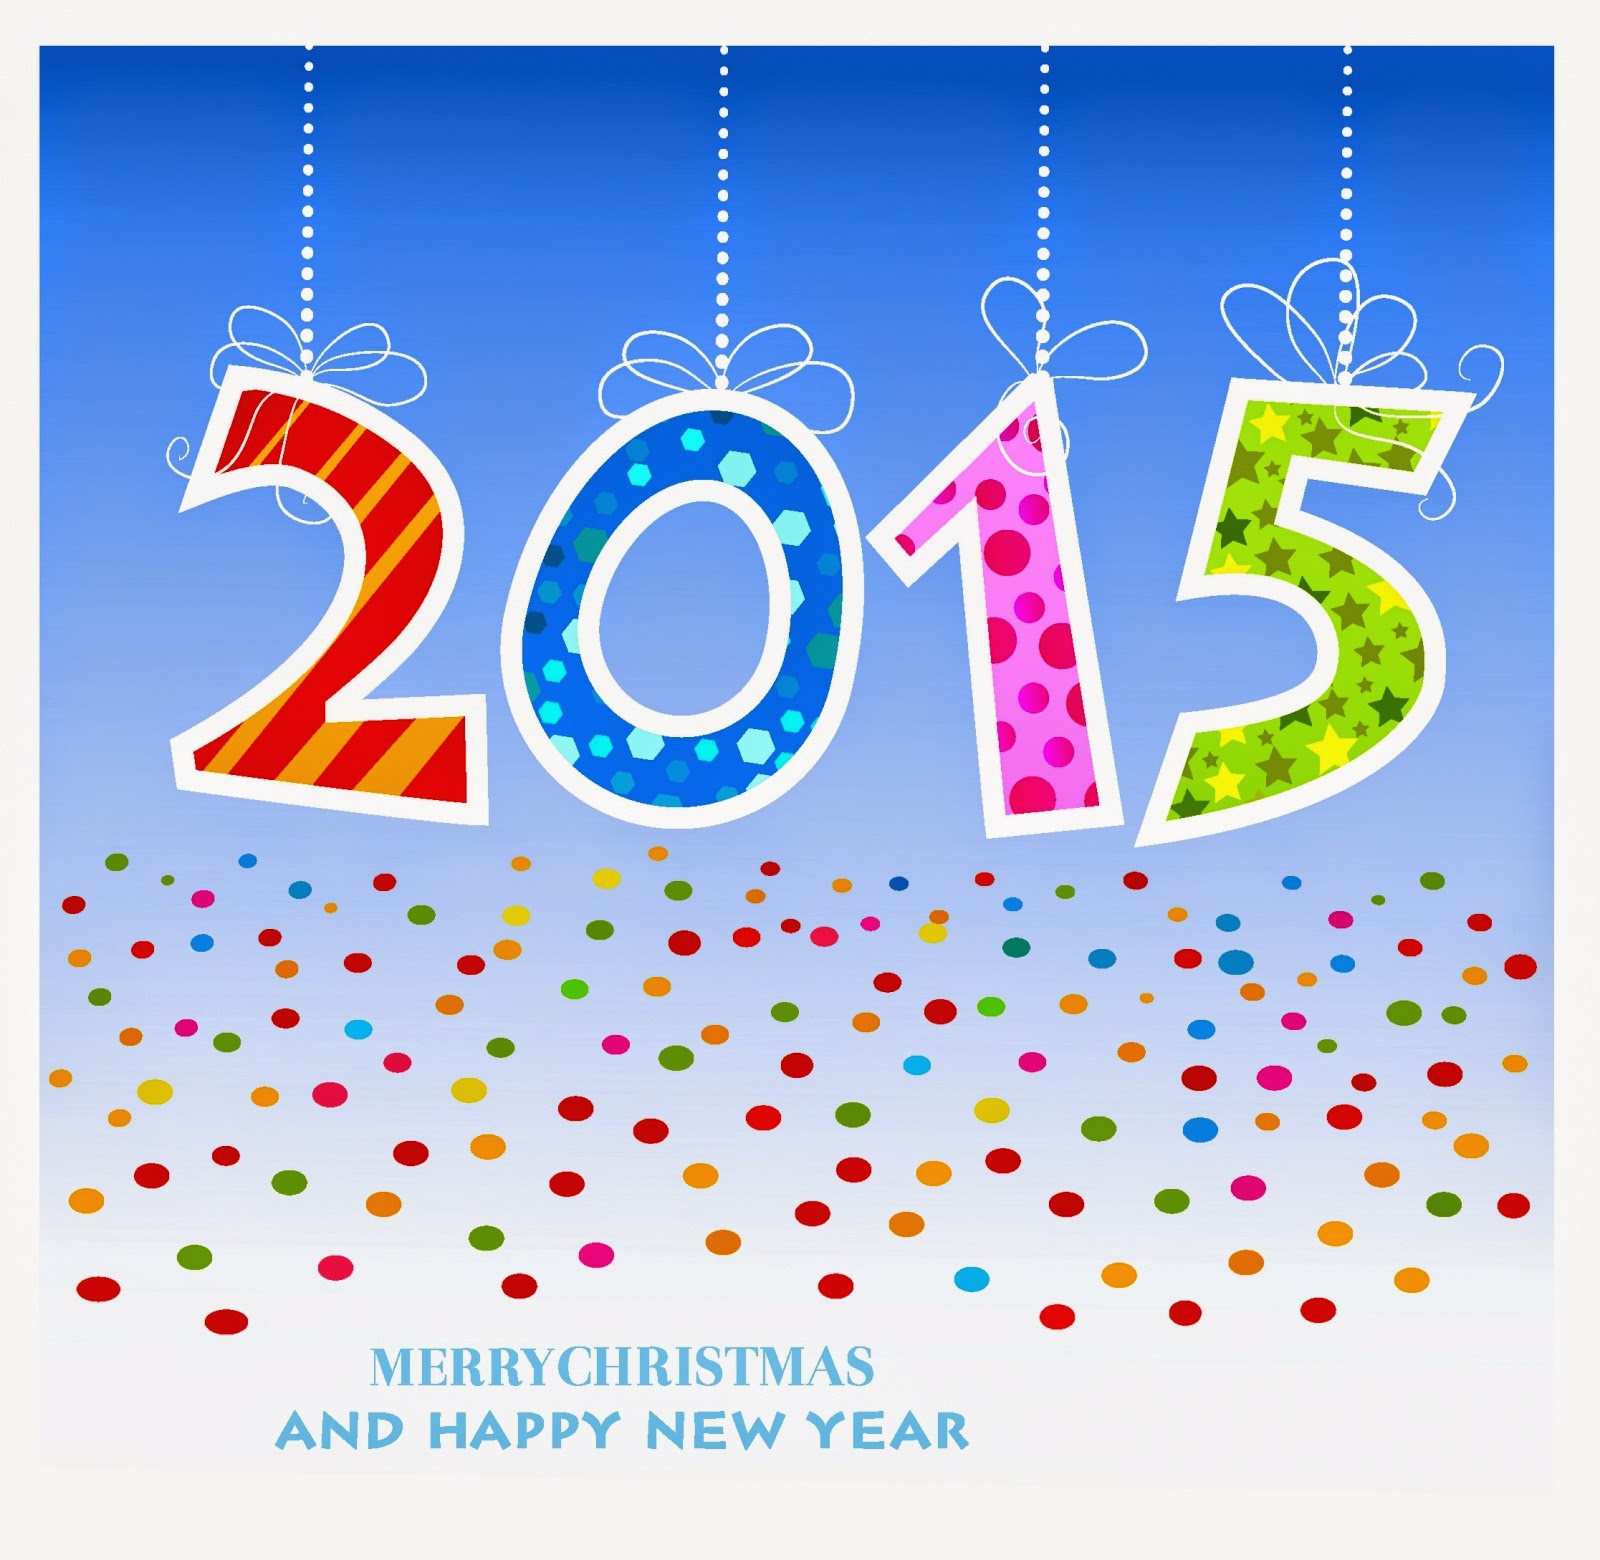 Greeting Cards 2015 Free Greeting Cards 2015 Wishing Messege 2015